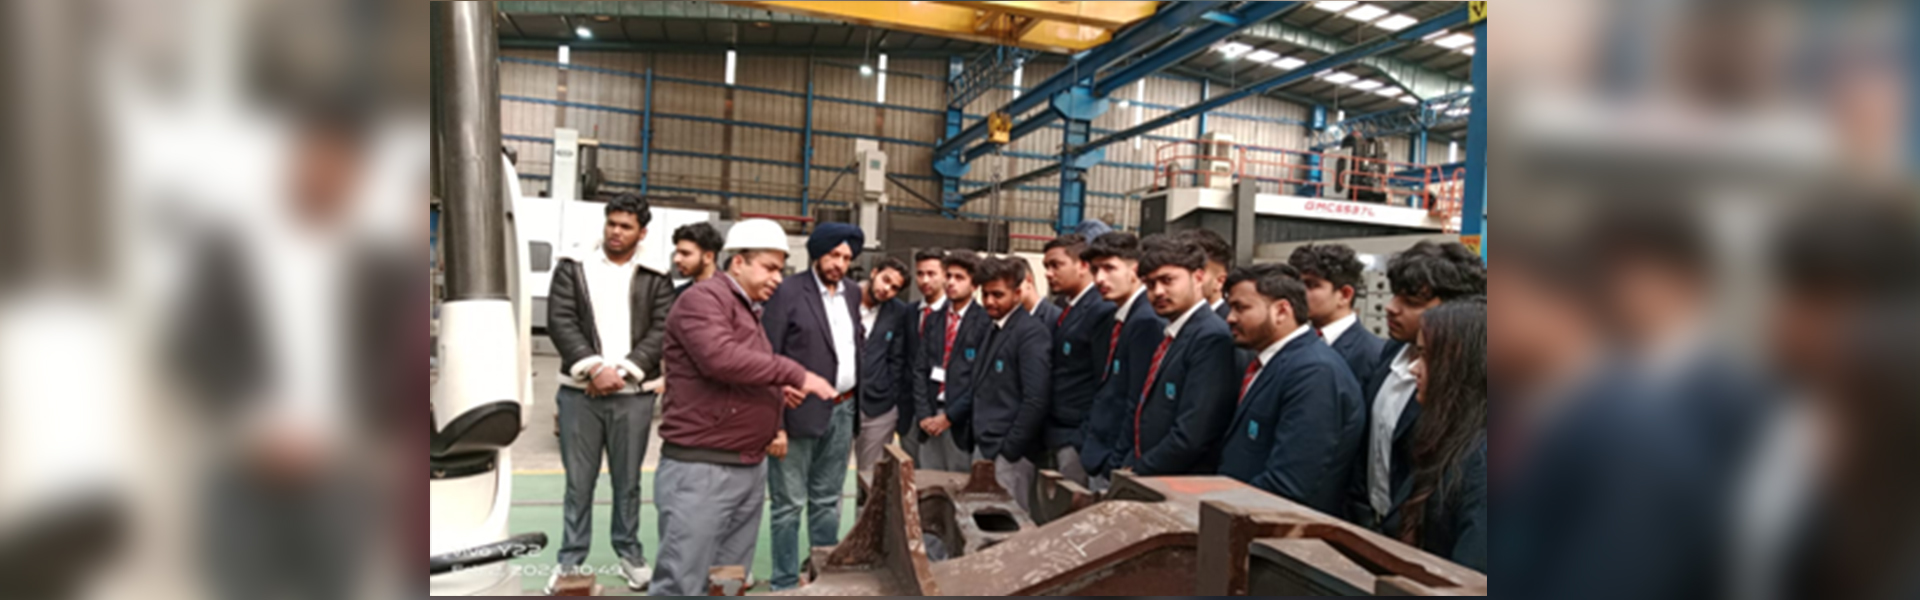 Industrial Visit to Metlonics Industries Private Limited, Kurali 